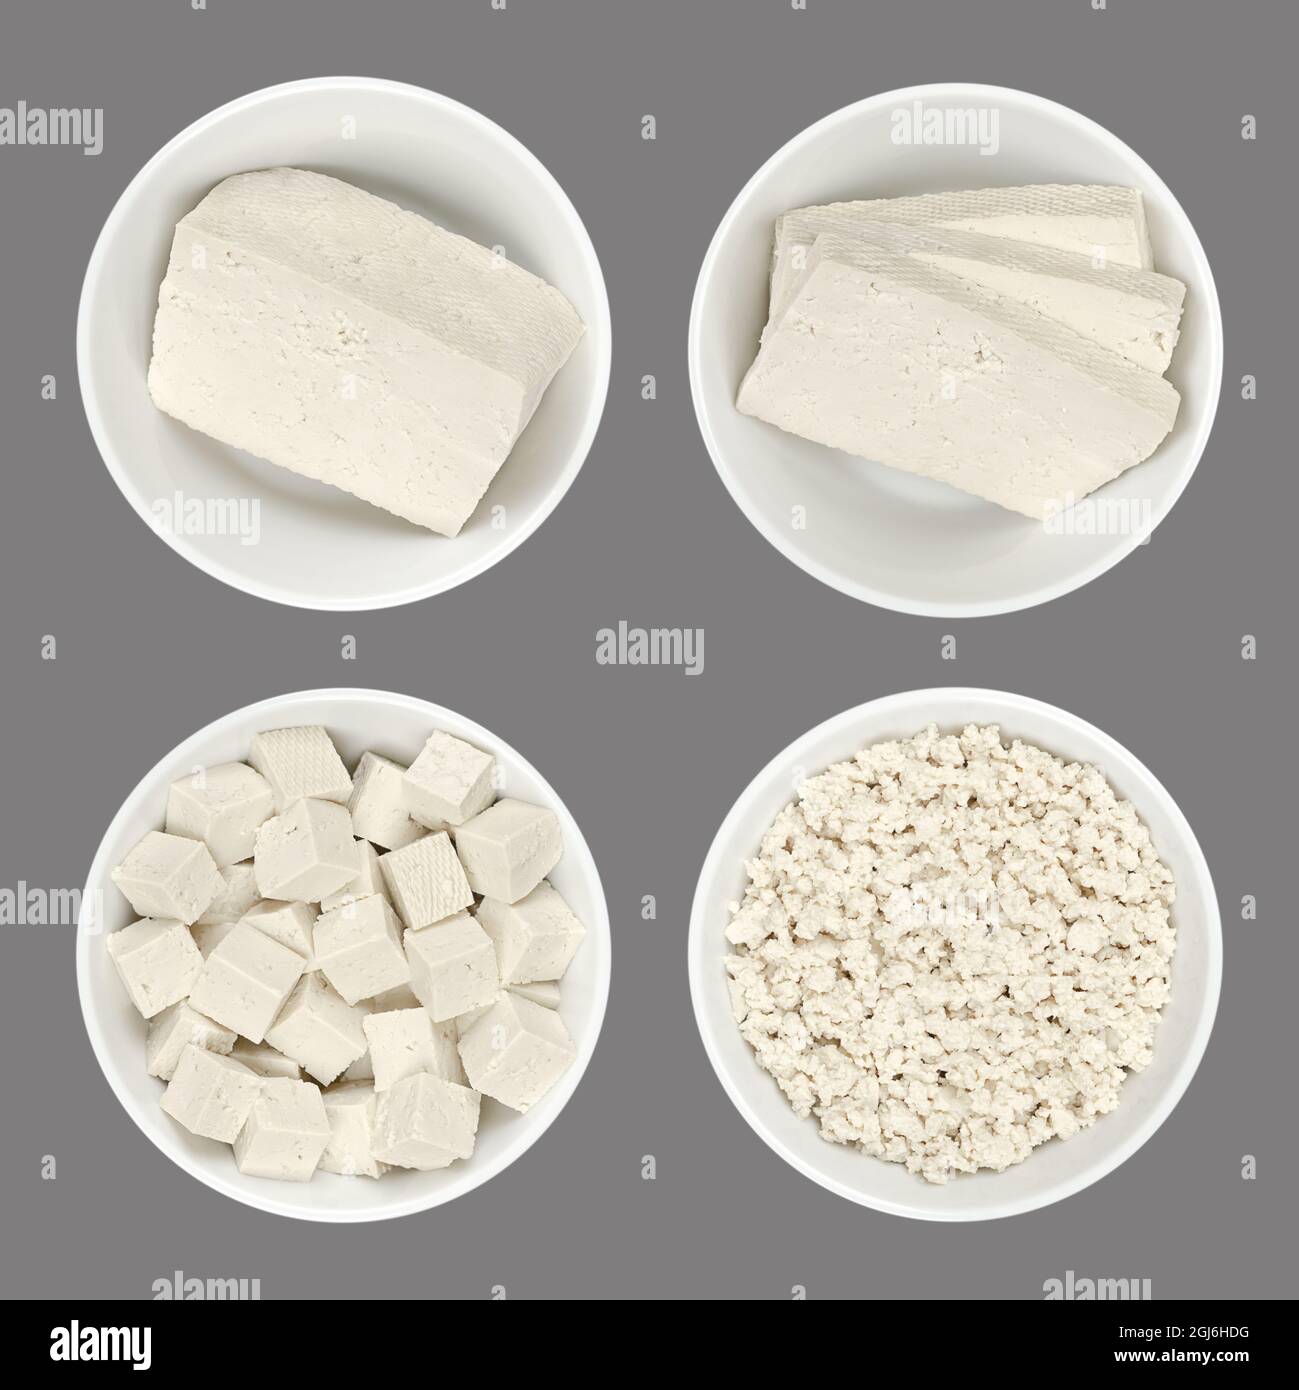 Tofu blanc transformé, en bols blancs, isolé sur fond gris. Un bloc, des tranches, des cubes et du tofu émietté. Caillé de haricots, fait de lait de soja coagulé. Banque D'Images